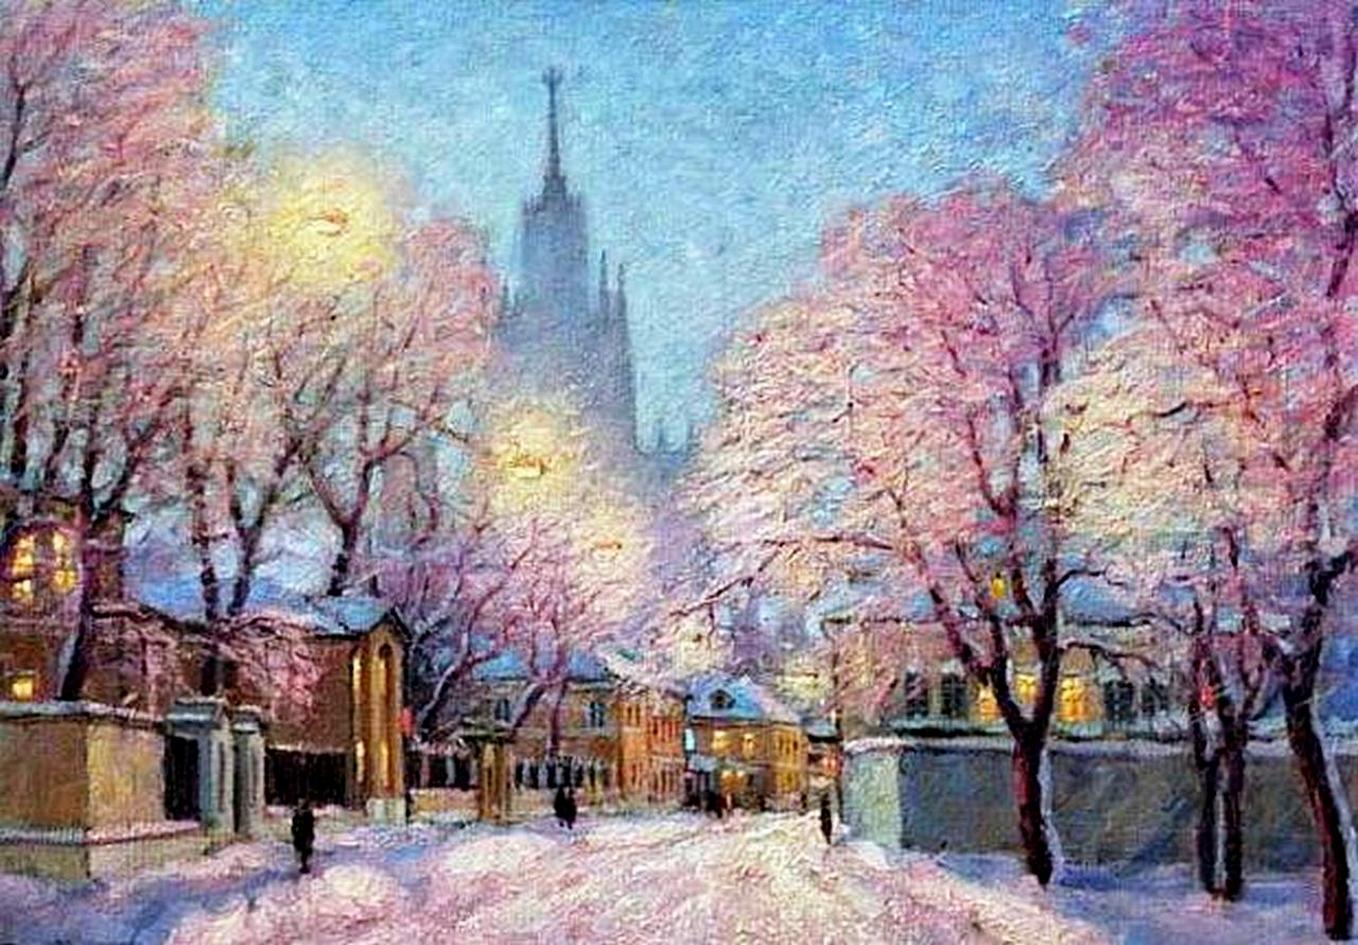 Москва зимой пейзаж